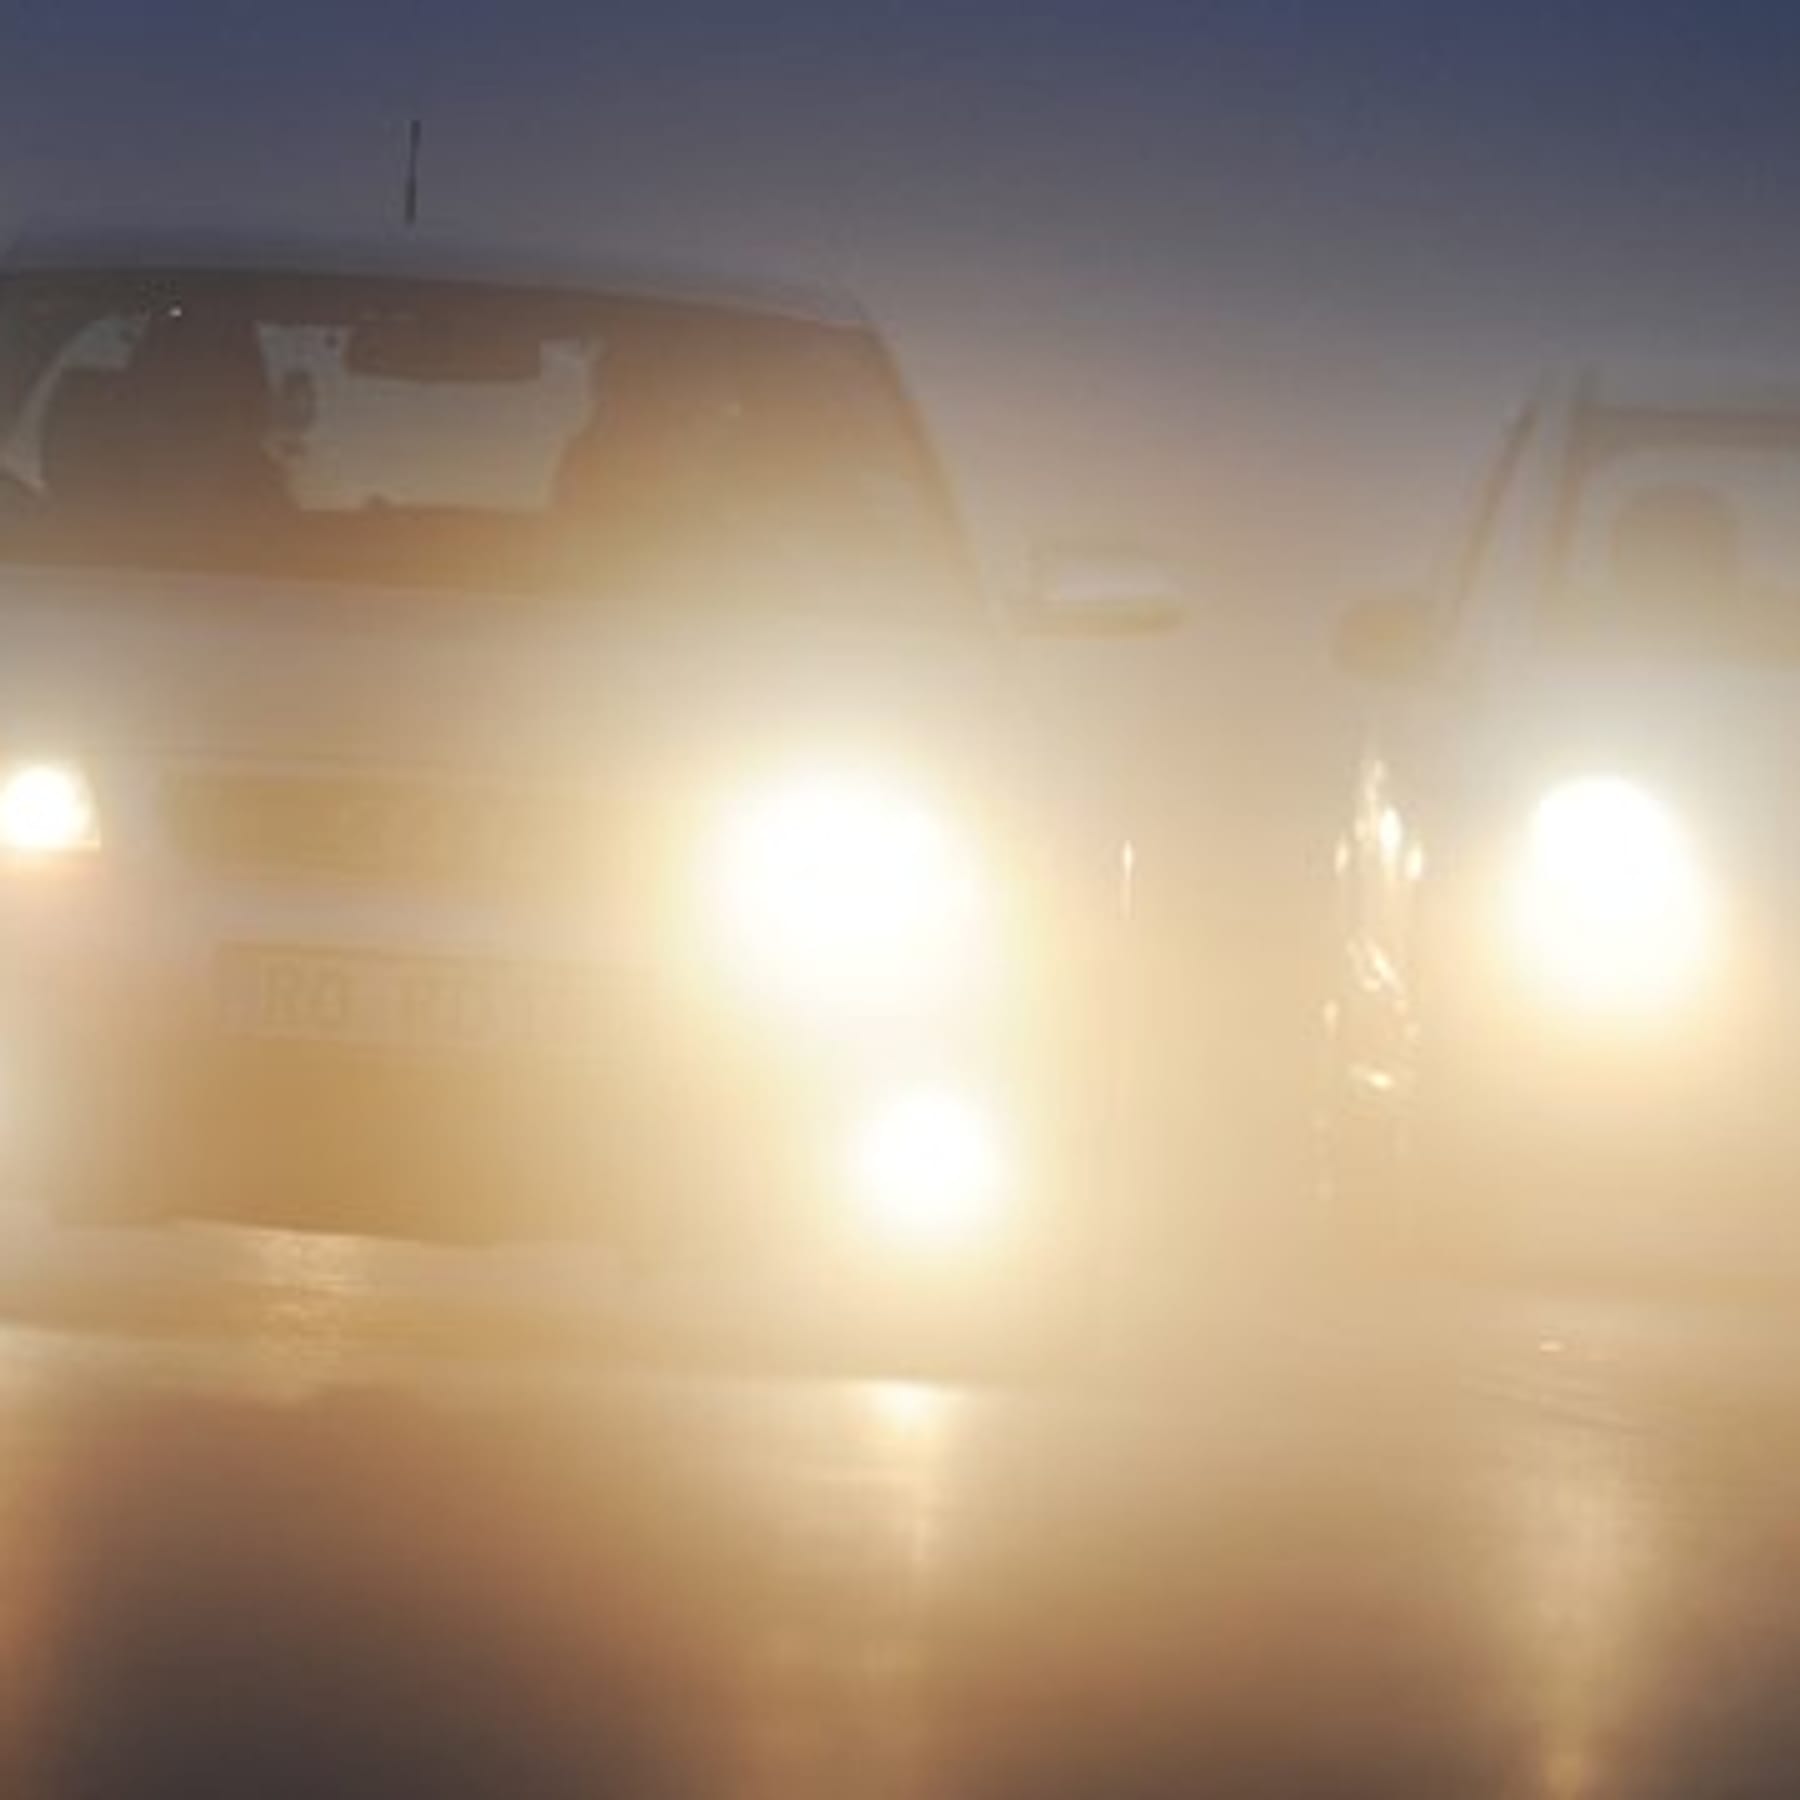 https://images.t-online.de/2021/05/84449134v1/140x0:360x360/fit-in/1800x0/es-werde-licht-je-besser-die-lichtanlage-desto-sicherer-koennen-autofahrer-in-den-herbst-und-winter-starten.jpg